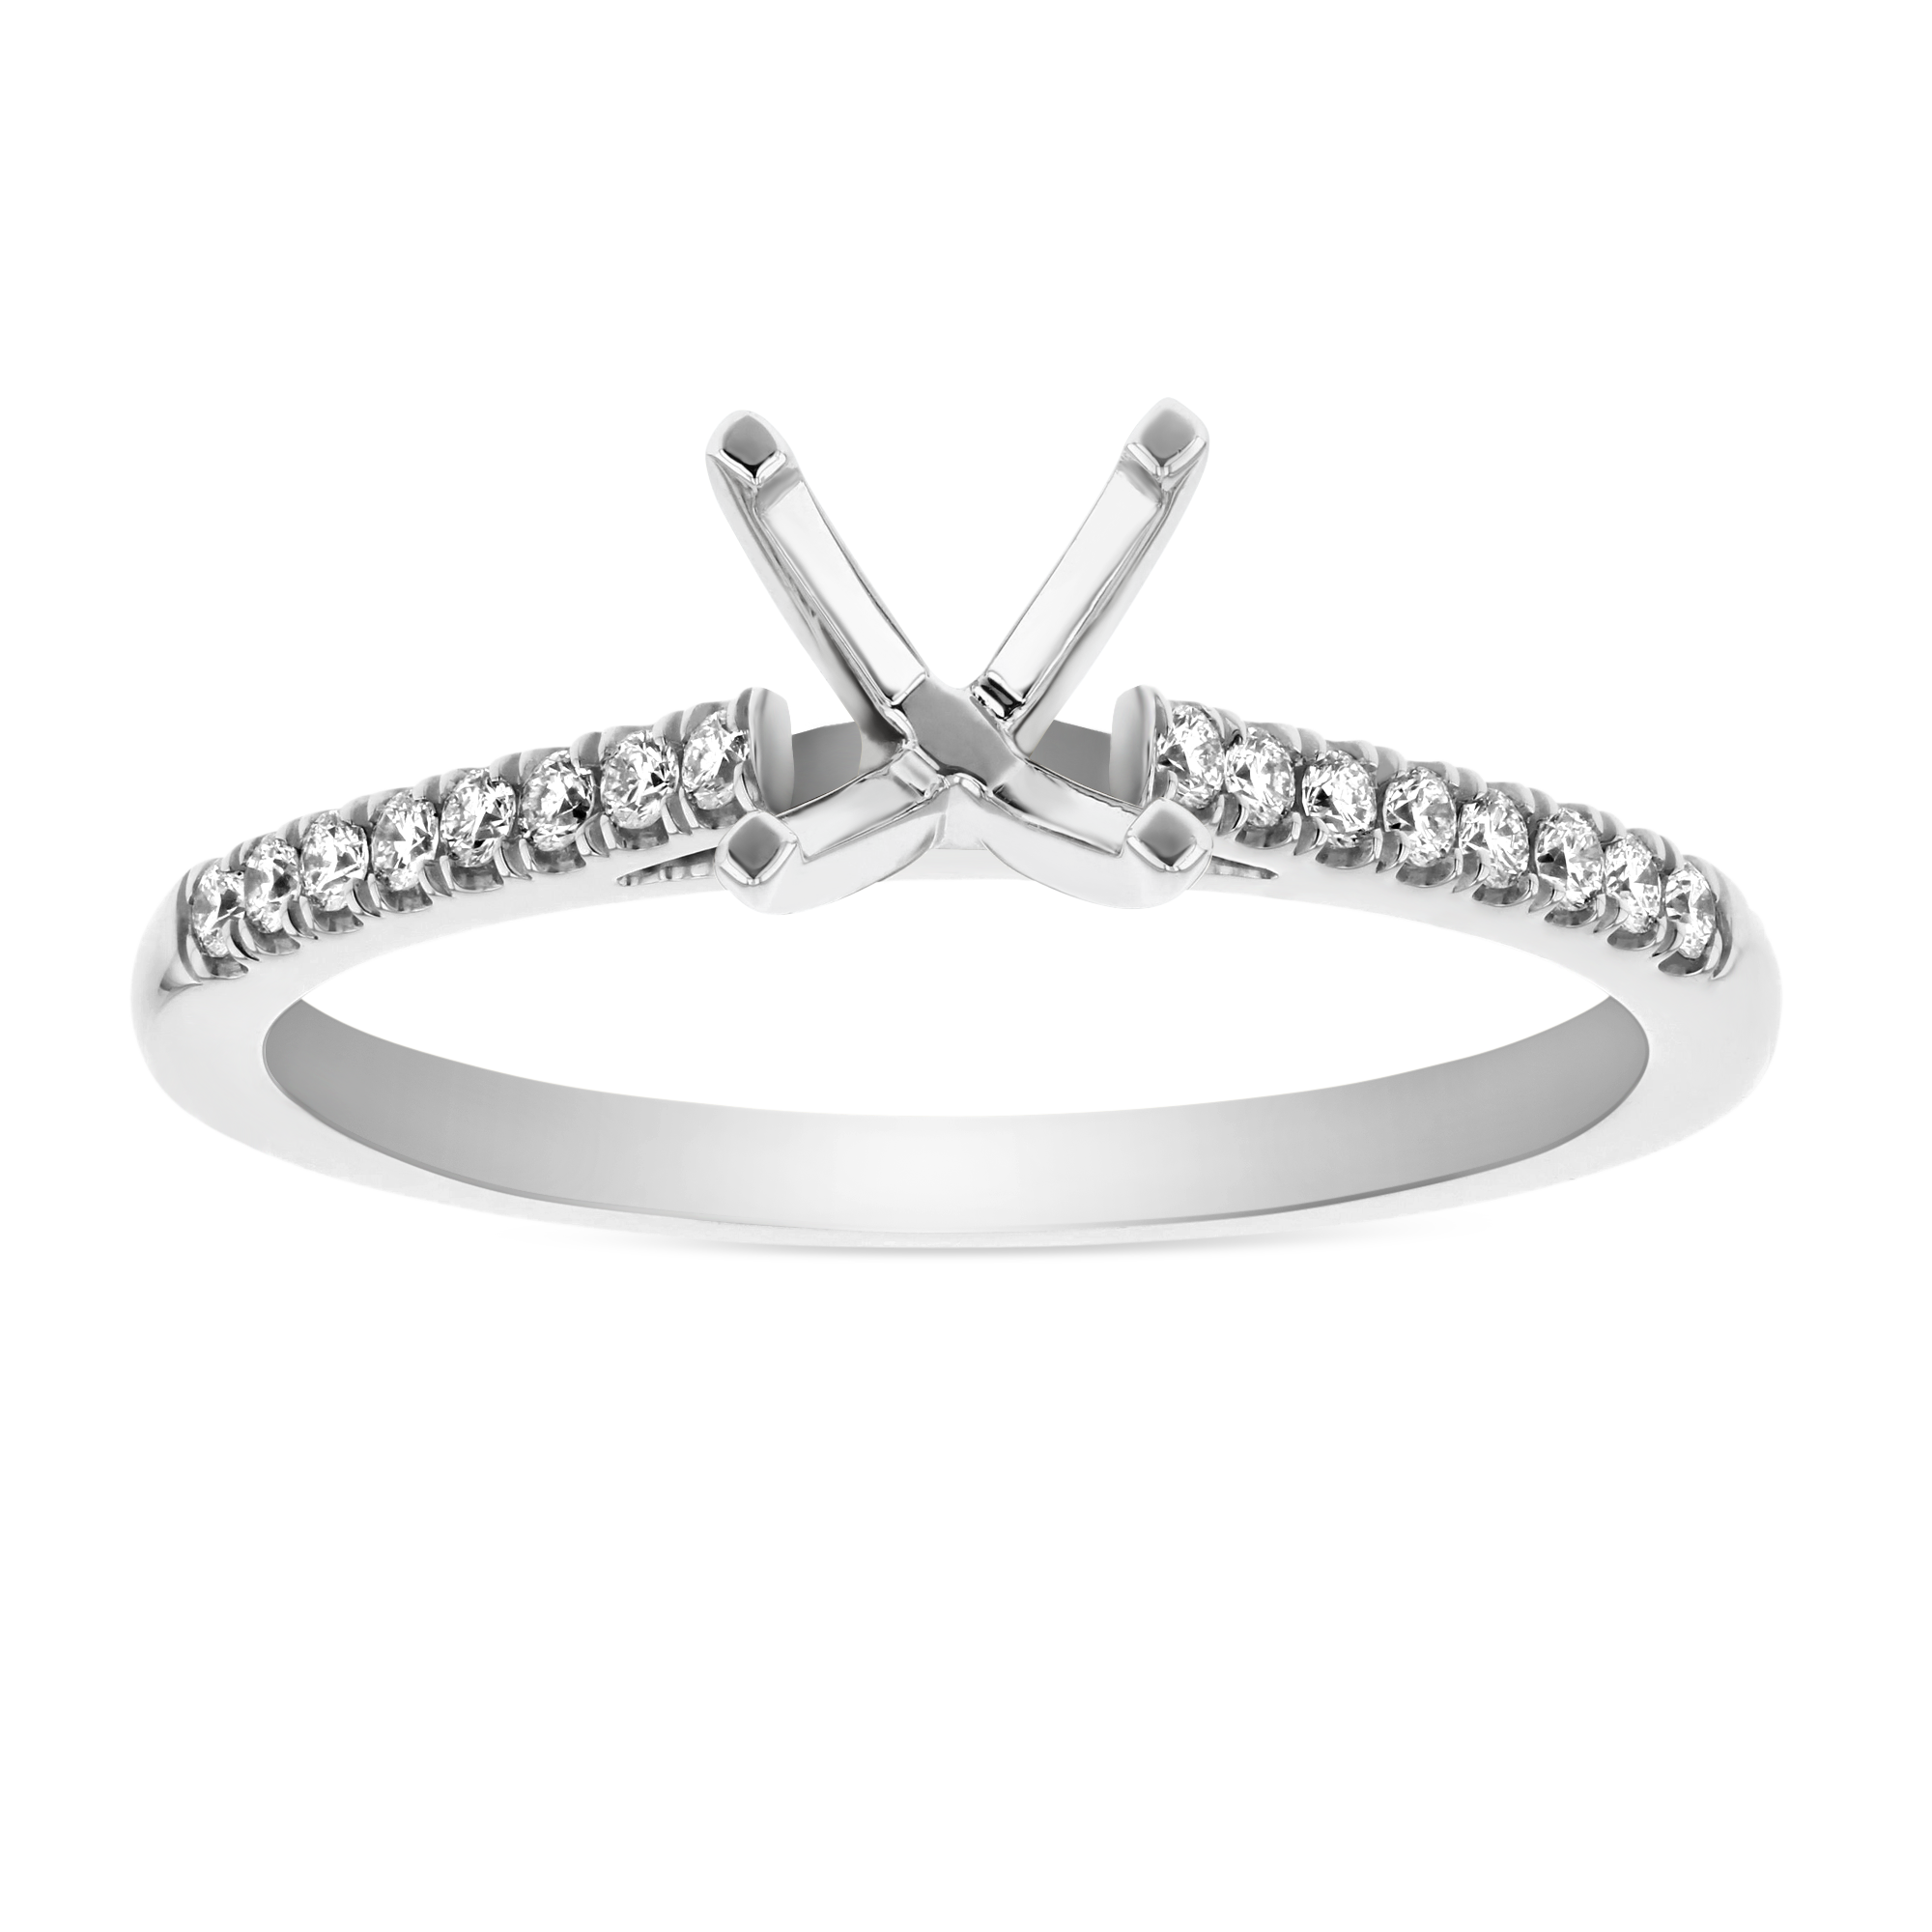 14K White Gold Prong Set Diamond Ring Mounting, 0.12cttw | Borsheims